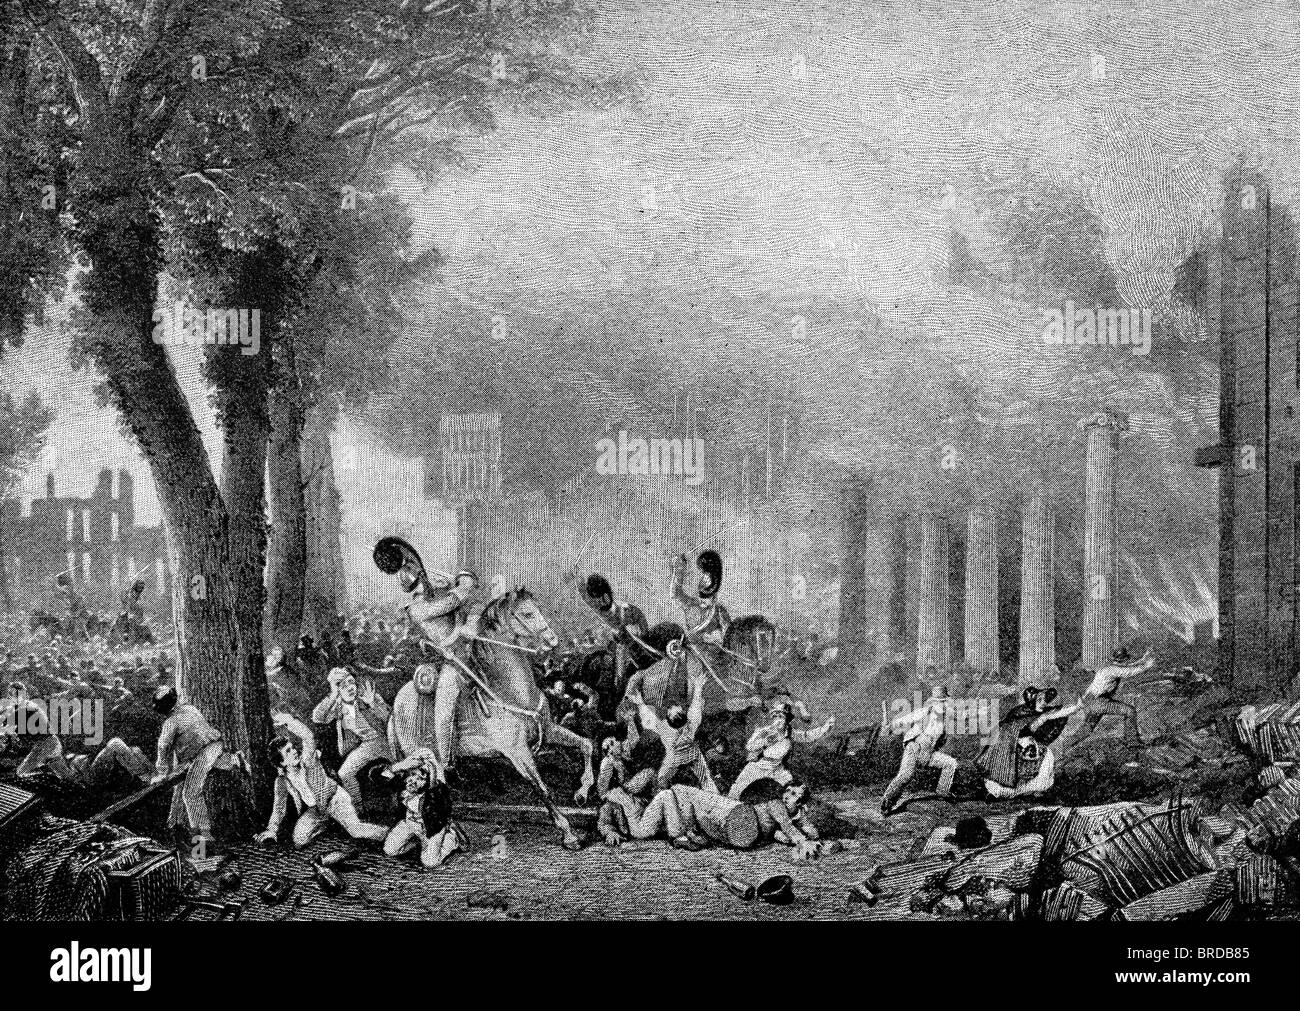 Troisième Dragoon Guards réprimer une émeute de réforme à Bristol en 1831 Banque D'Images